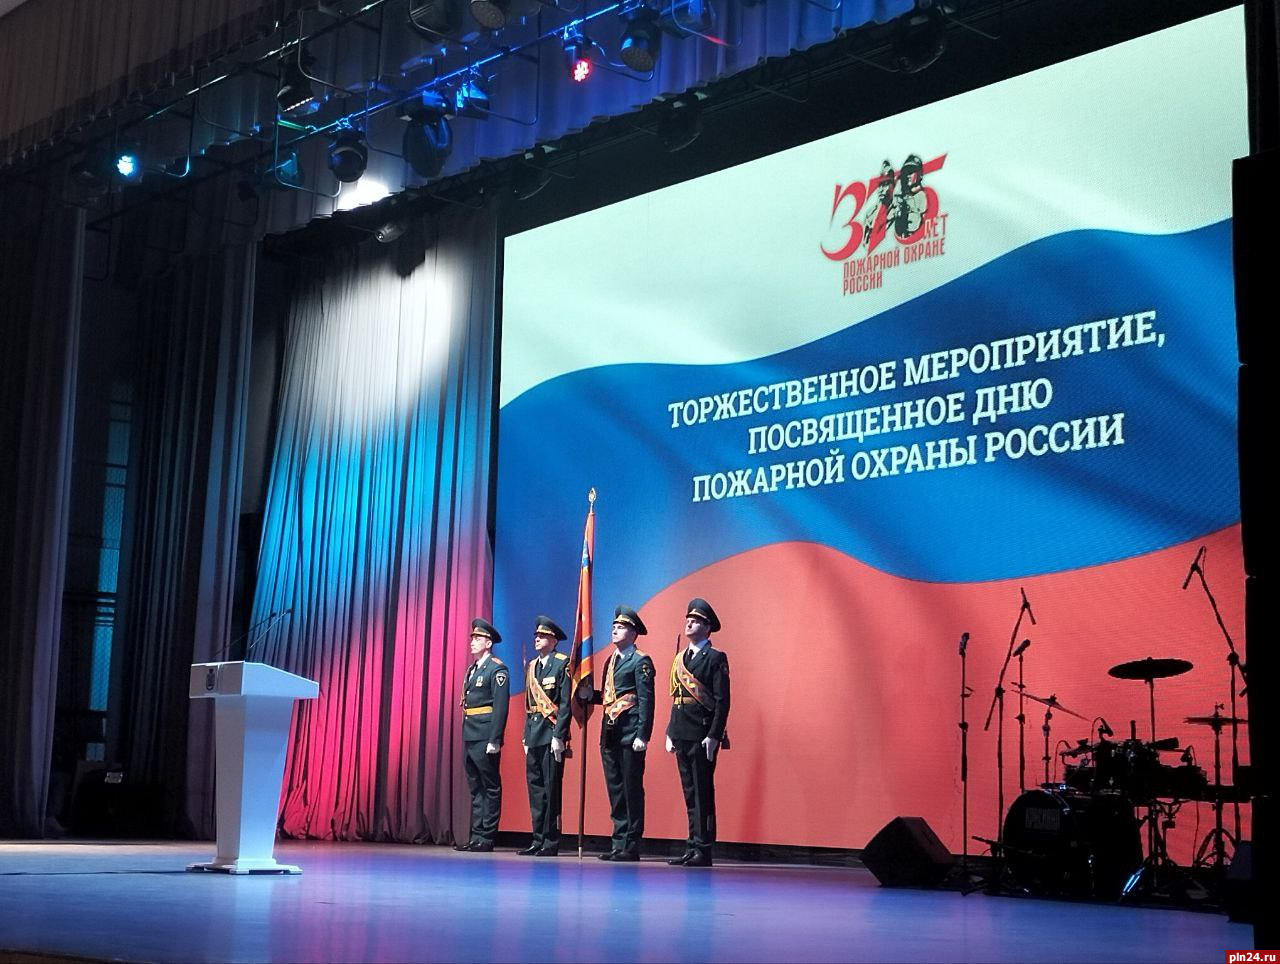 Заслуженных пожарных наградили в Псковской области